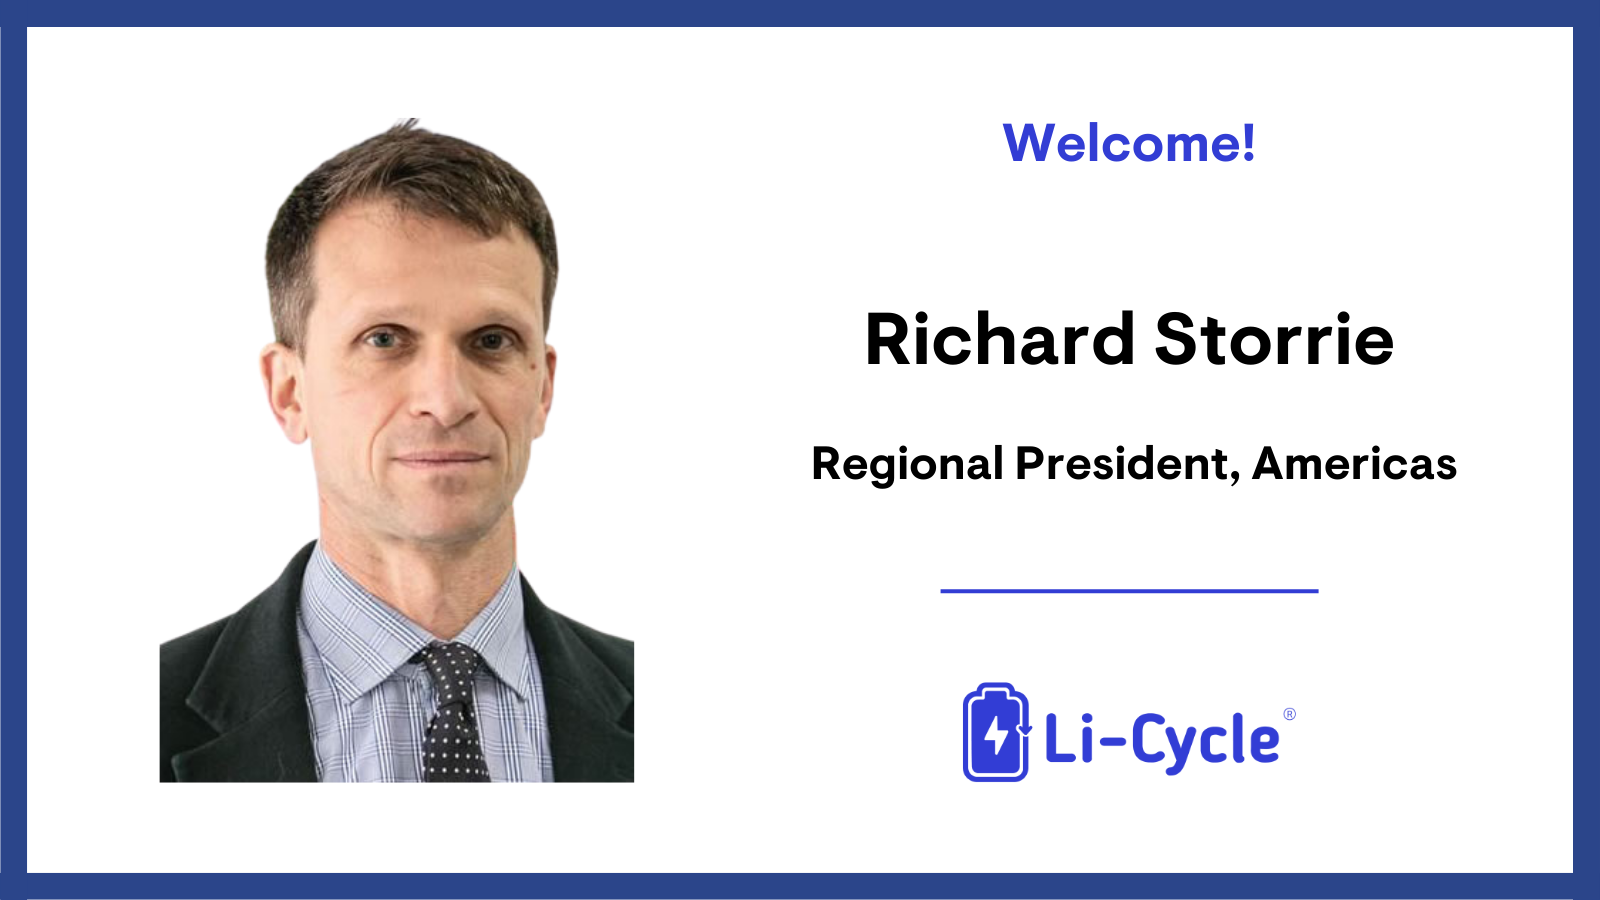 Richard Storrie_Regional President, Americas, Li-Cycle